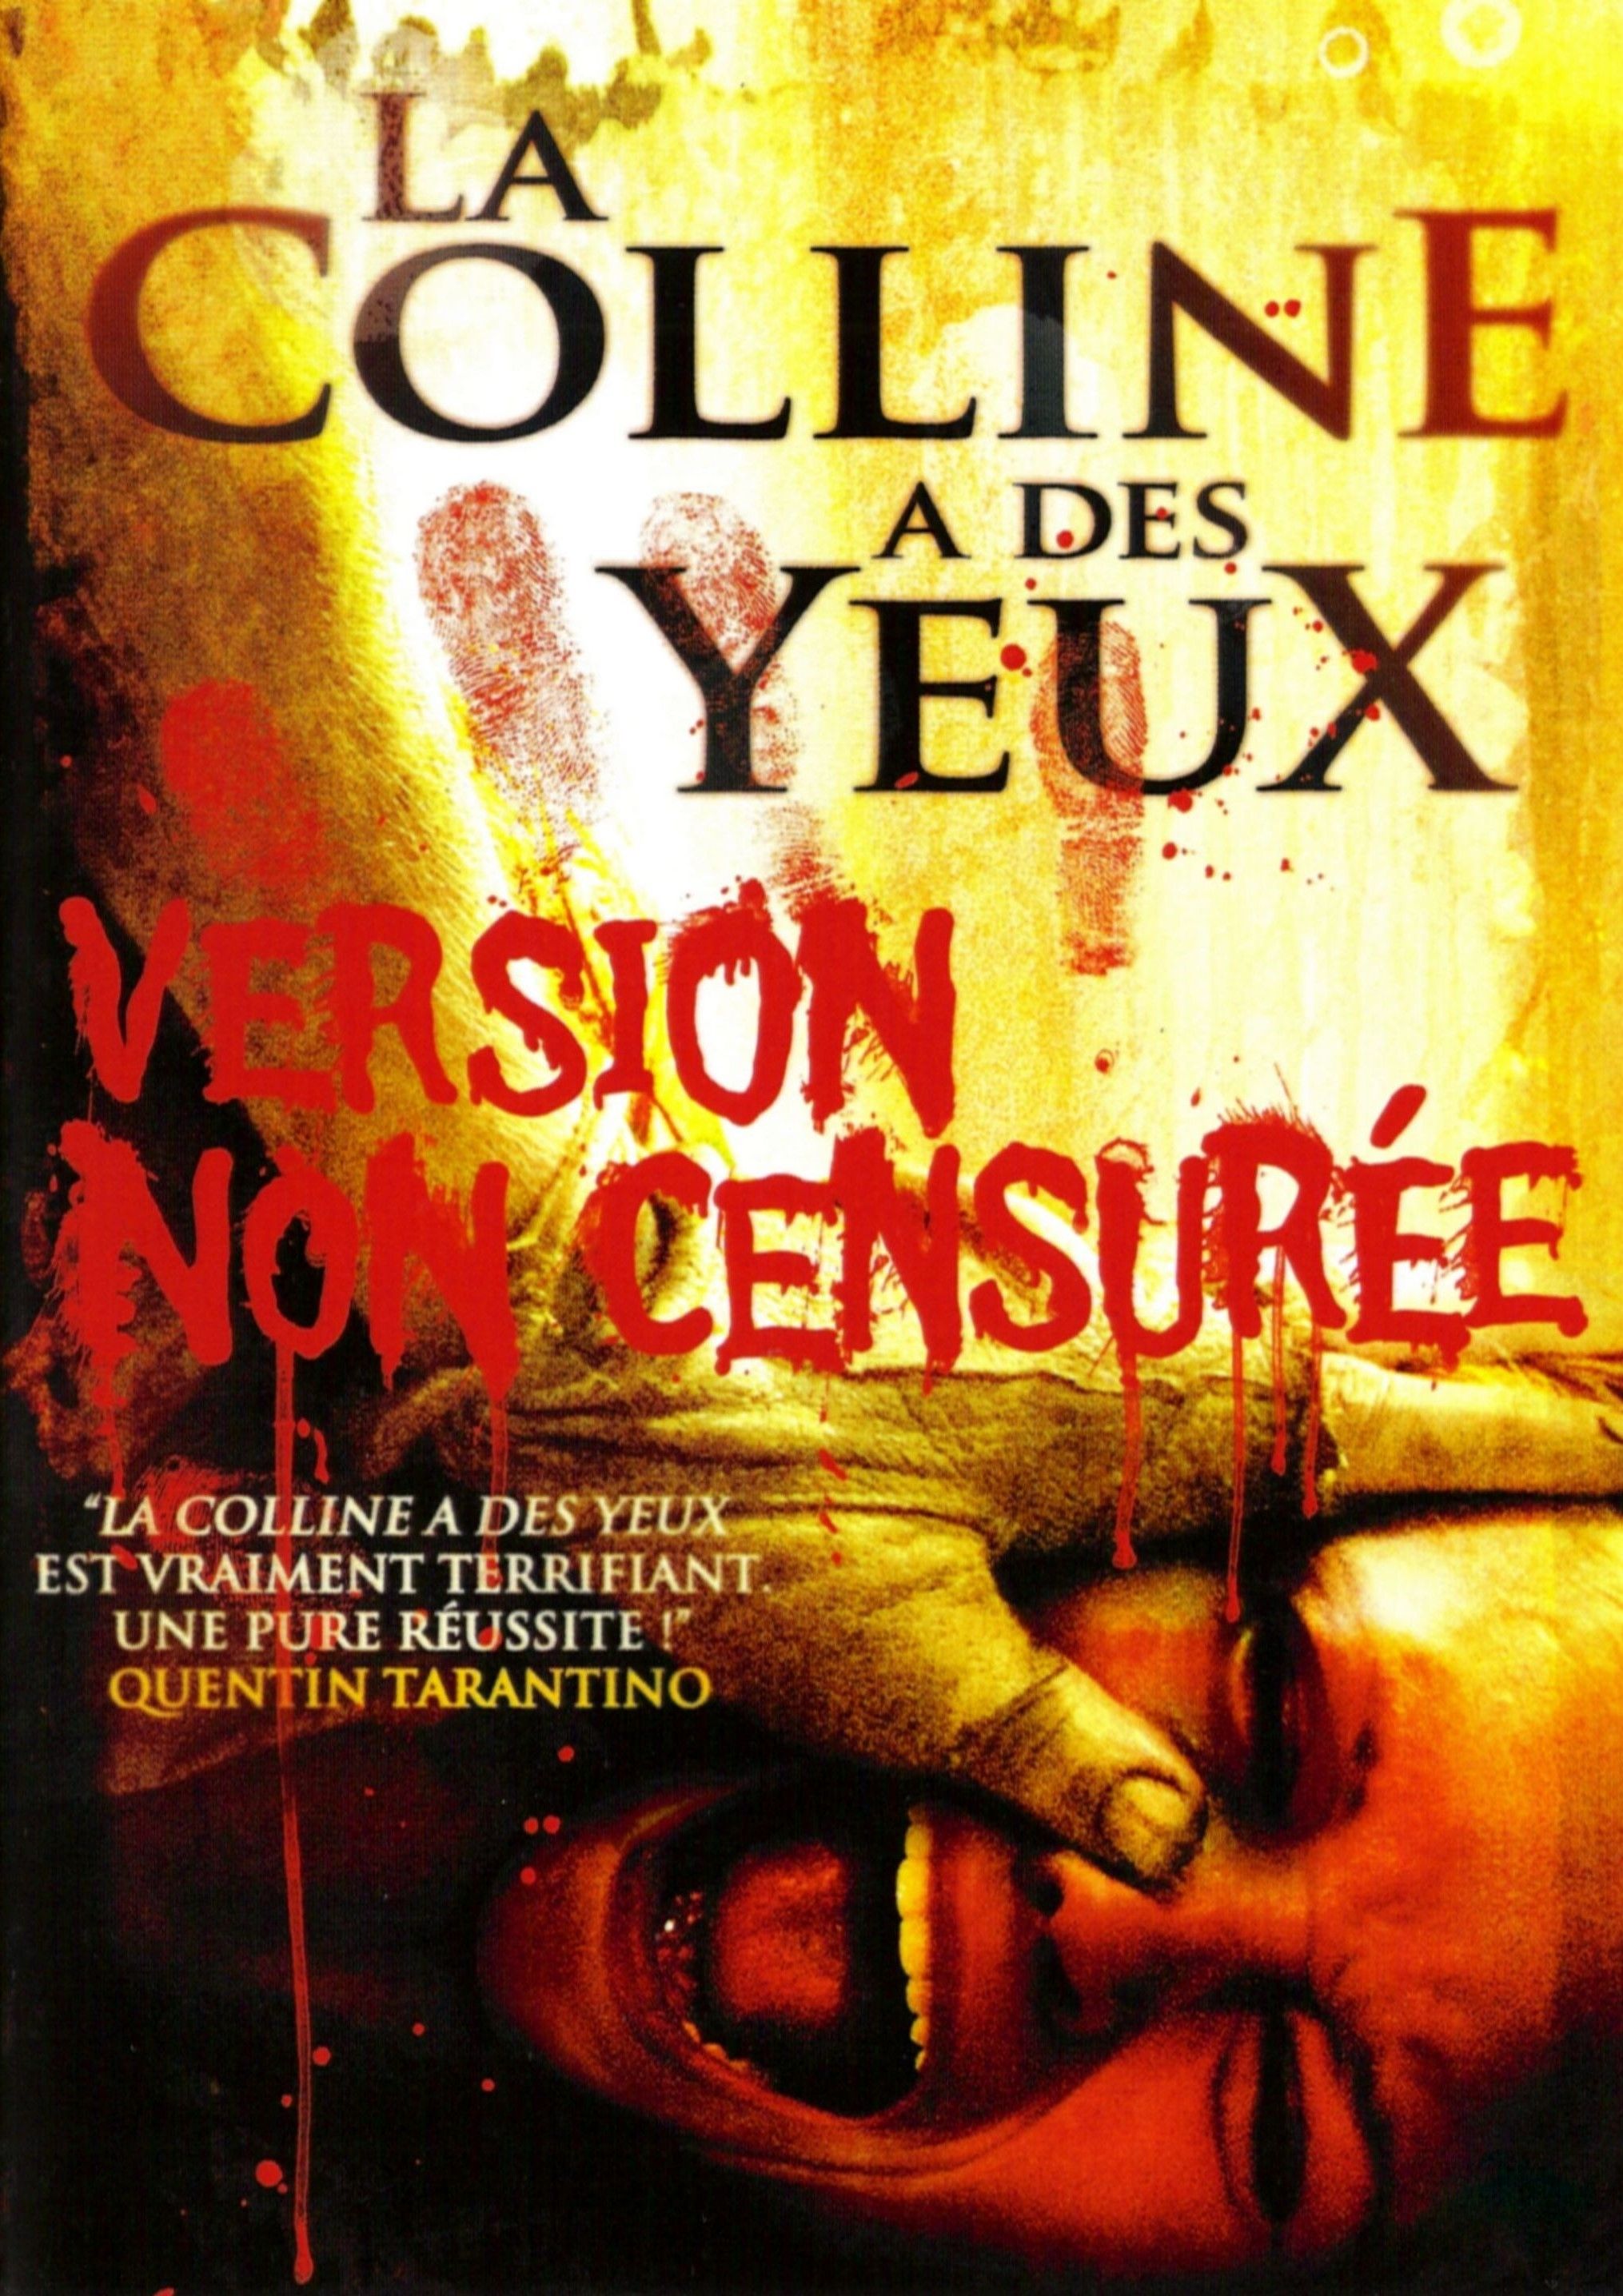 Affiches, posters et images de La colline a des yeux (2006) - La Colline A Des Yeux Film